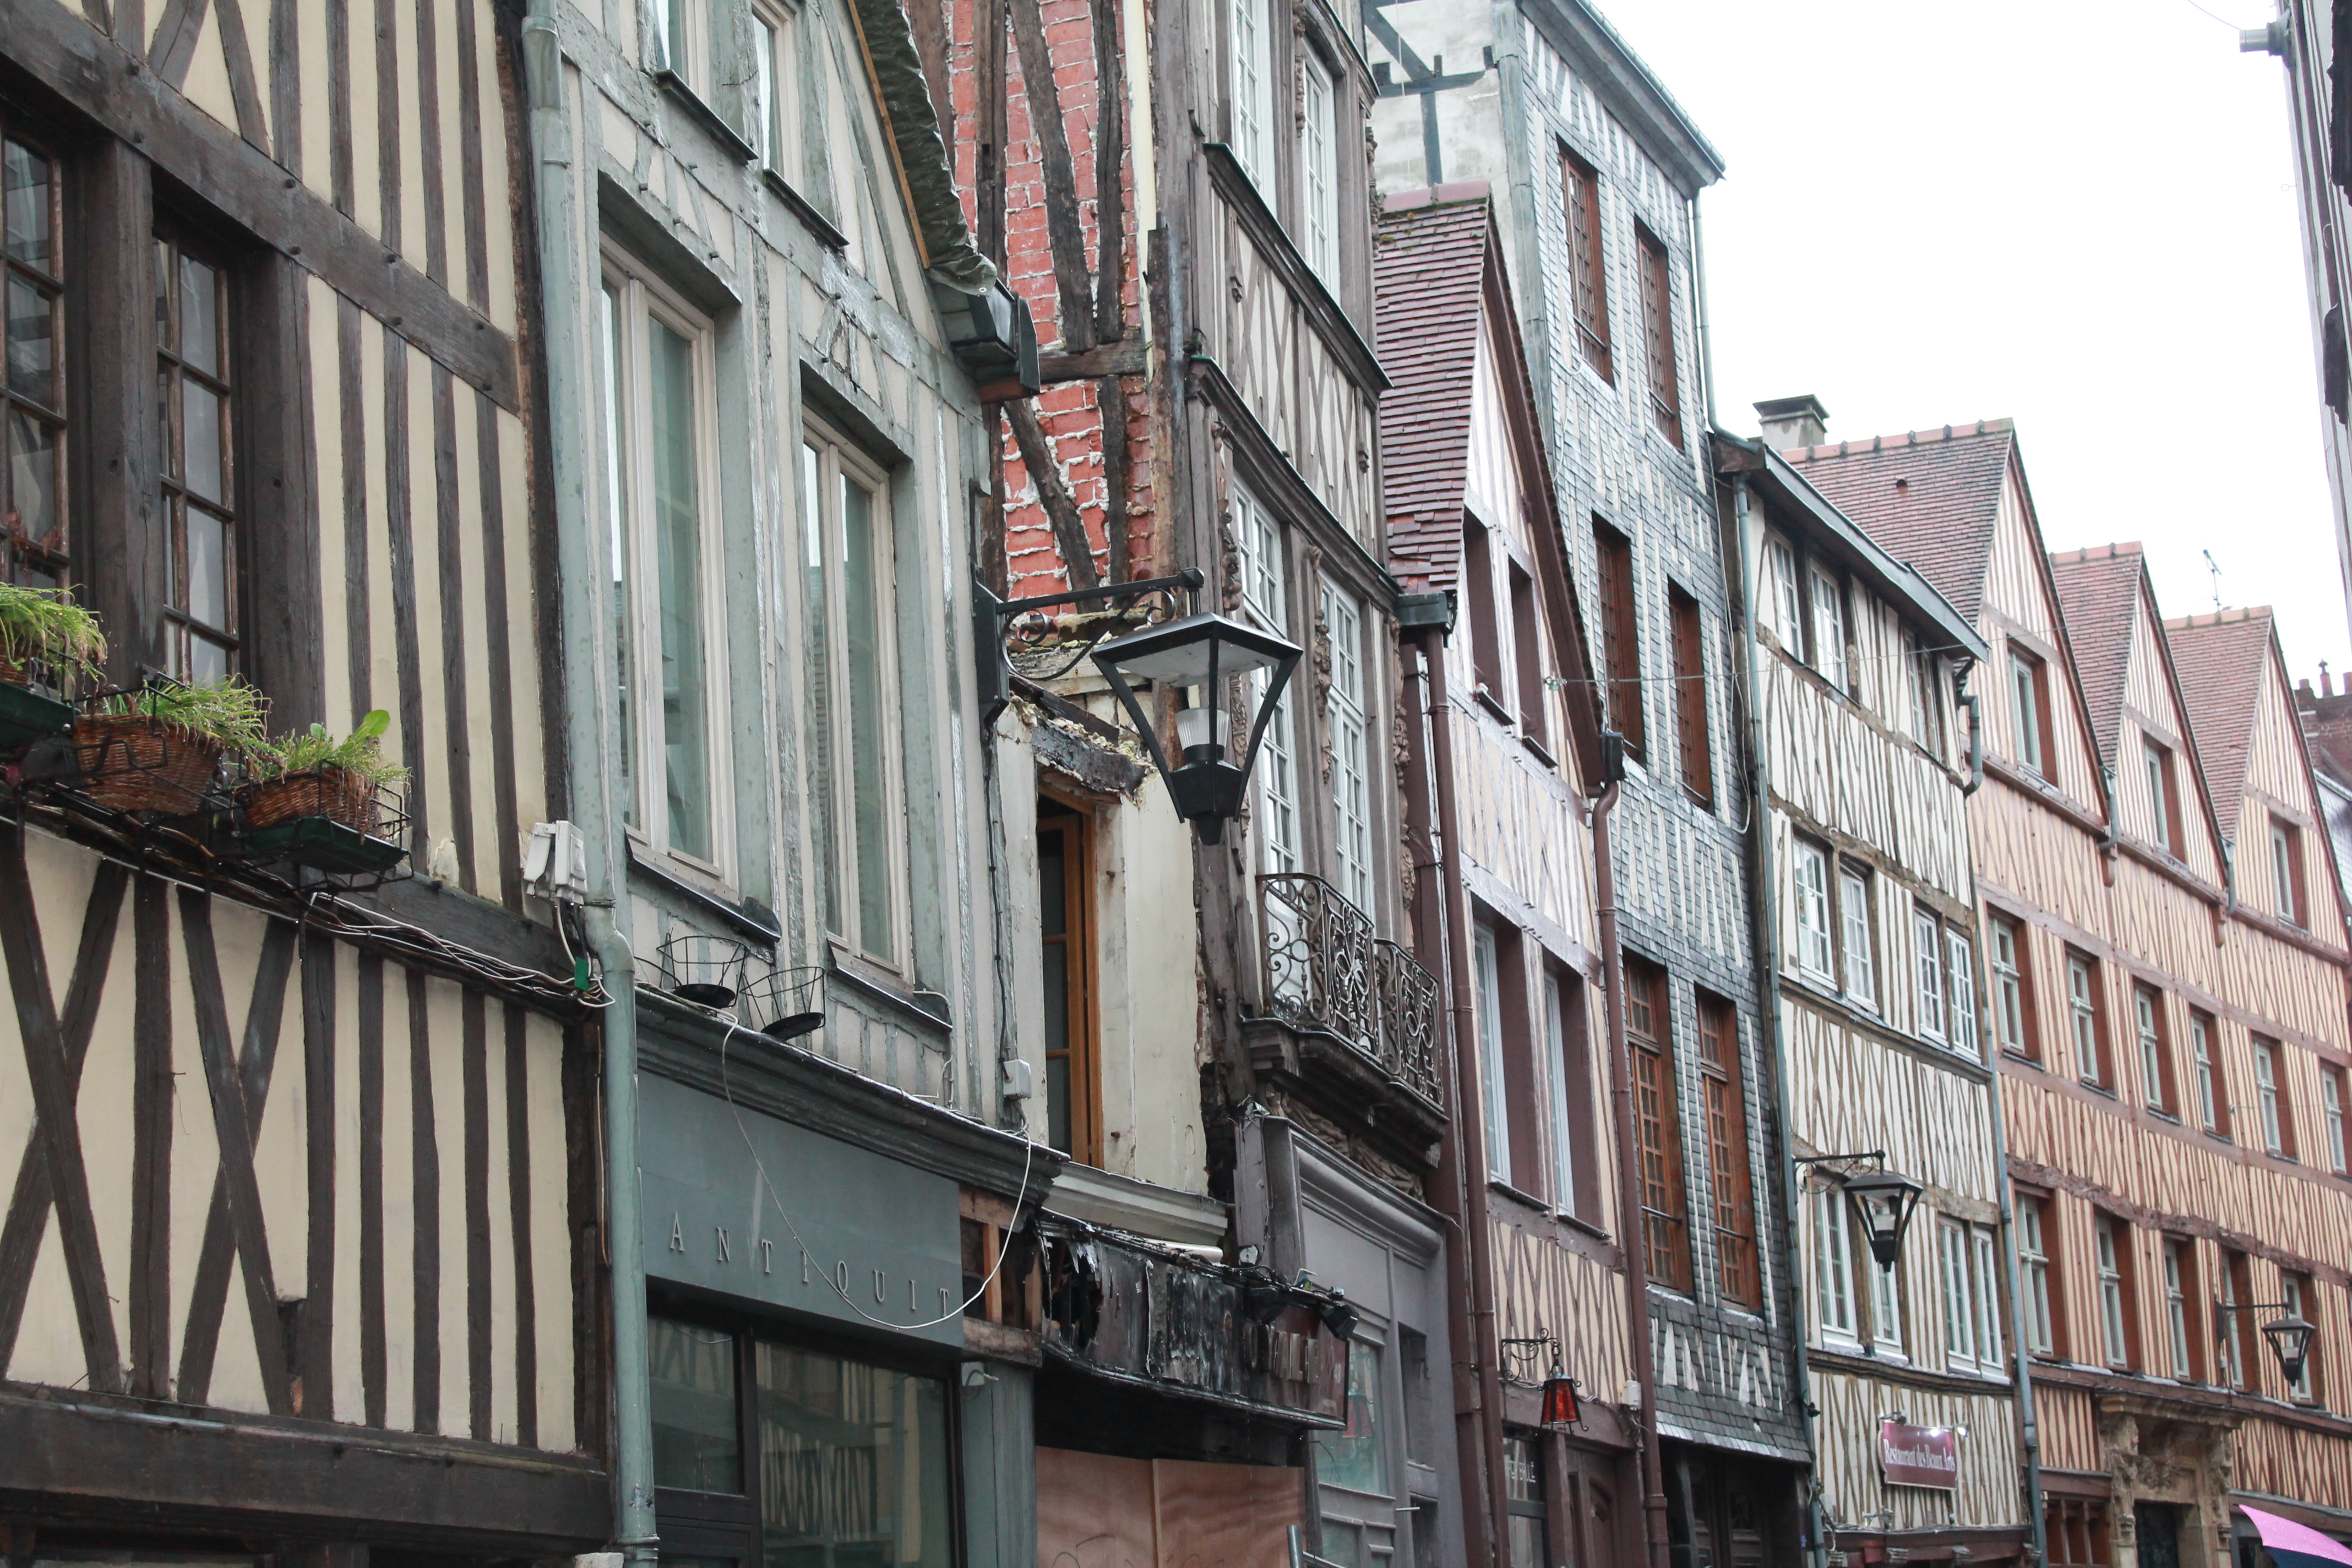 Les maisons à colombage de Rouen